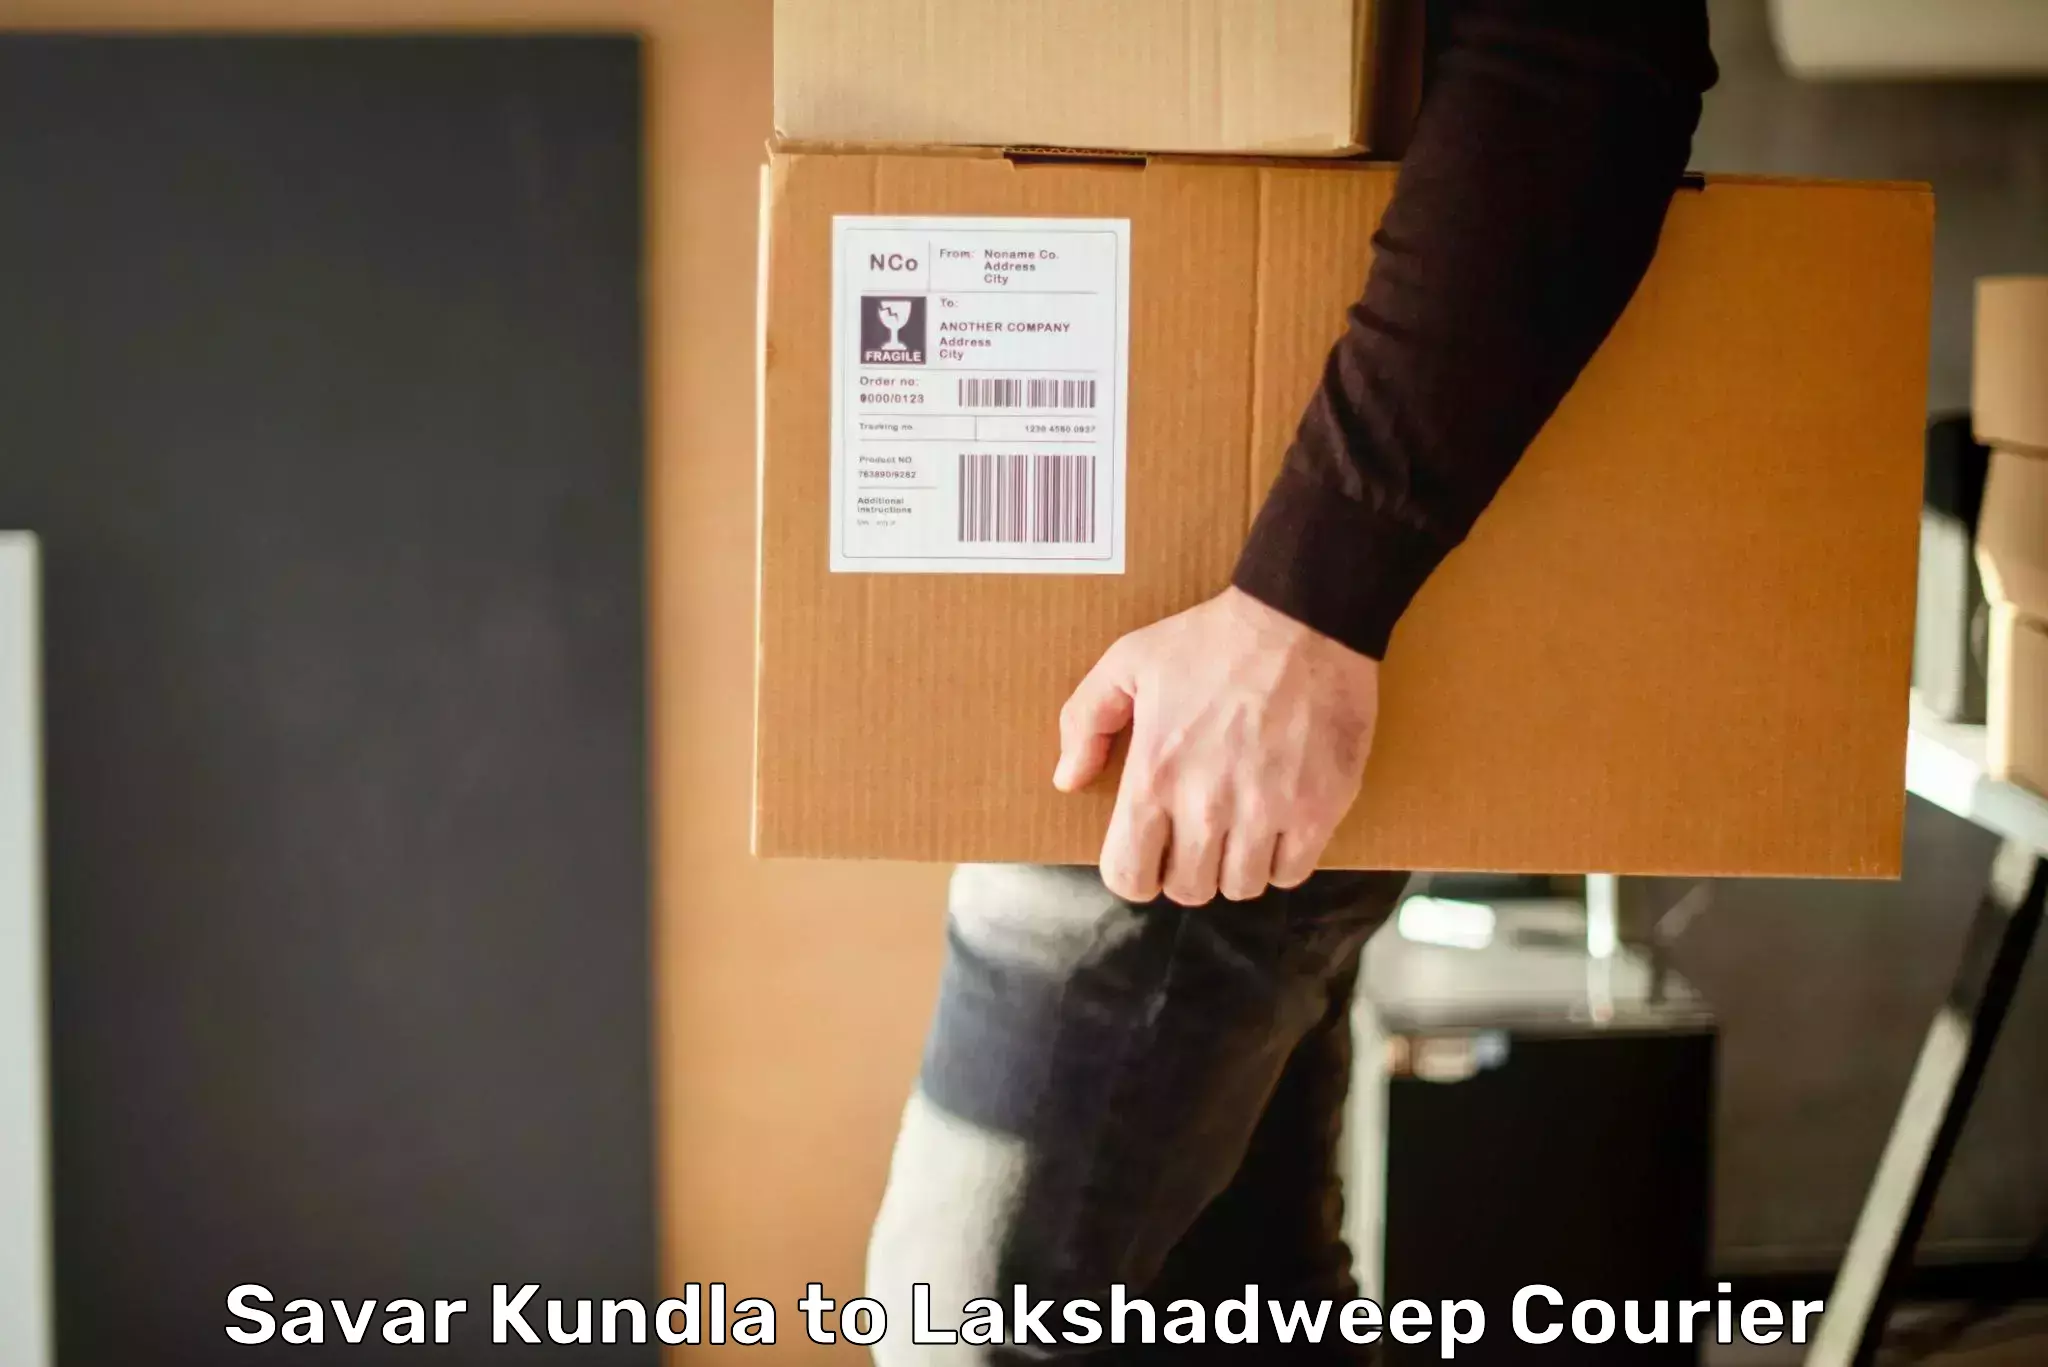 Lightweight parcel options Savar Kundla to Lakshadweep